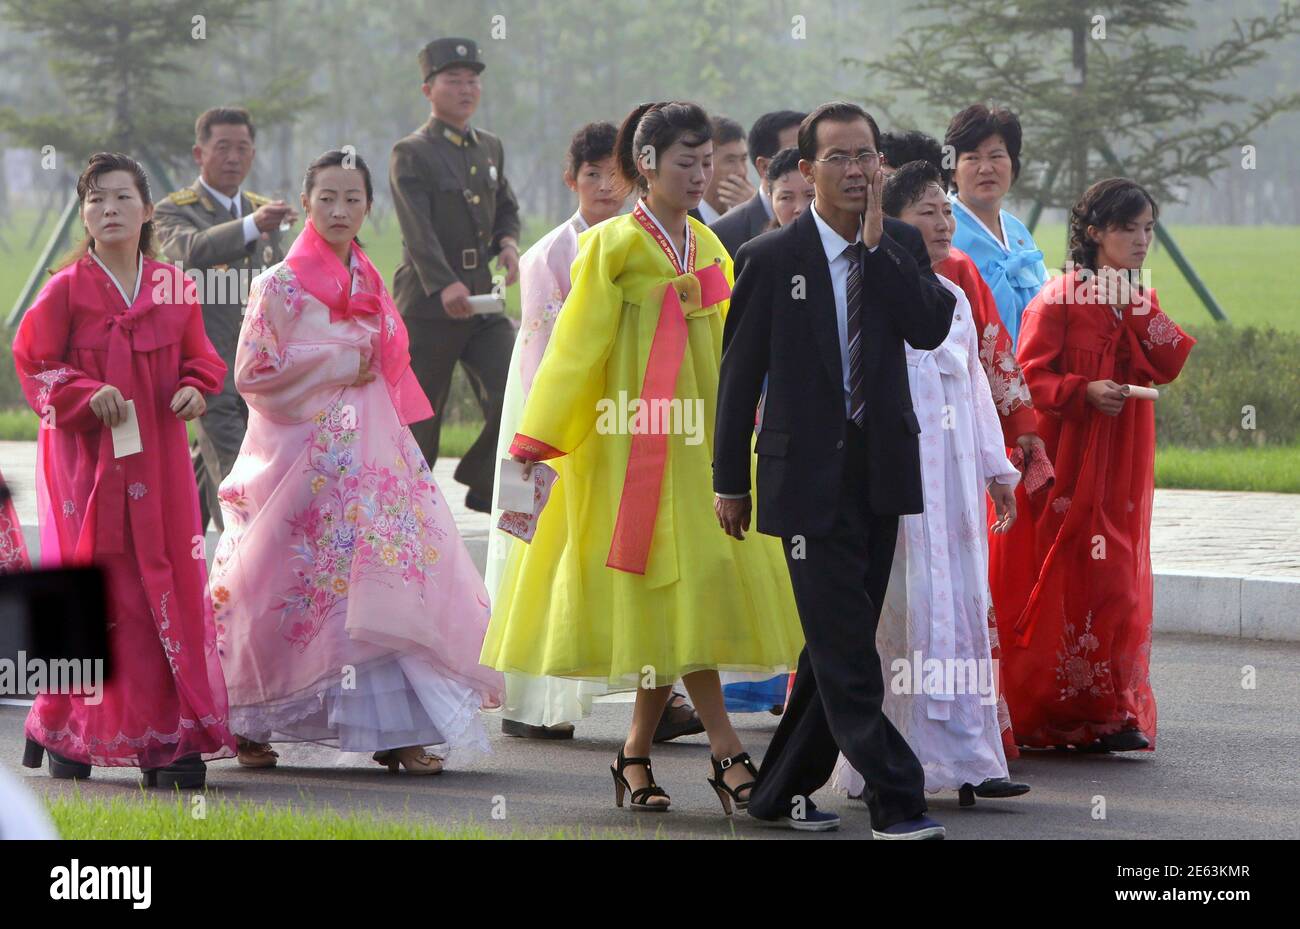 Nordkoreanische Frauen in traditionellen Kostümen und Soldaten kommen zur Eröffnungszeremonie des Friedhofs der Gefallenen Kämpfer der koreanischen Volksarmee (KPA) in Pjöngjang am 25. Juli 2013, Im Rahmen der Feierlichkeiten vor dem 60. Jahrestag der Unterzeichnung eines Waffenstillstands im Koreakrieg 1950-1953. REUTERS/Jason Lee (NORDKOREA - Tags: JAHRESTAG MILITÄRPOLITIK) Stockfoto